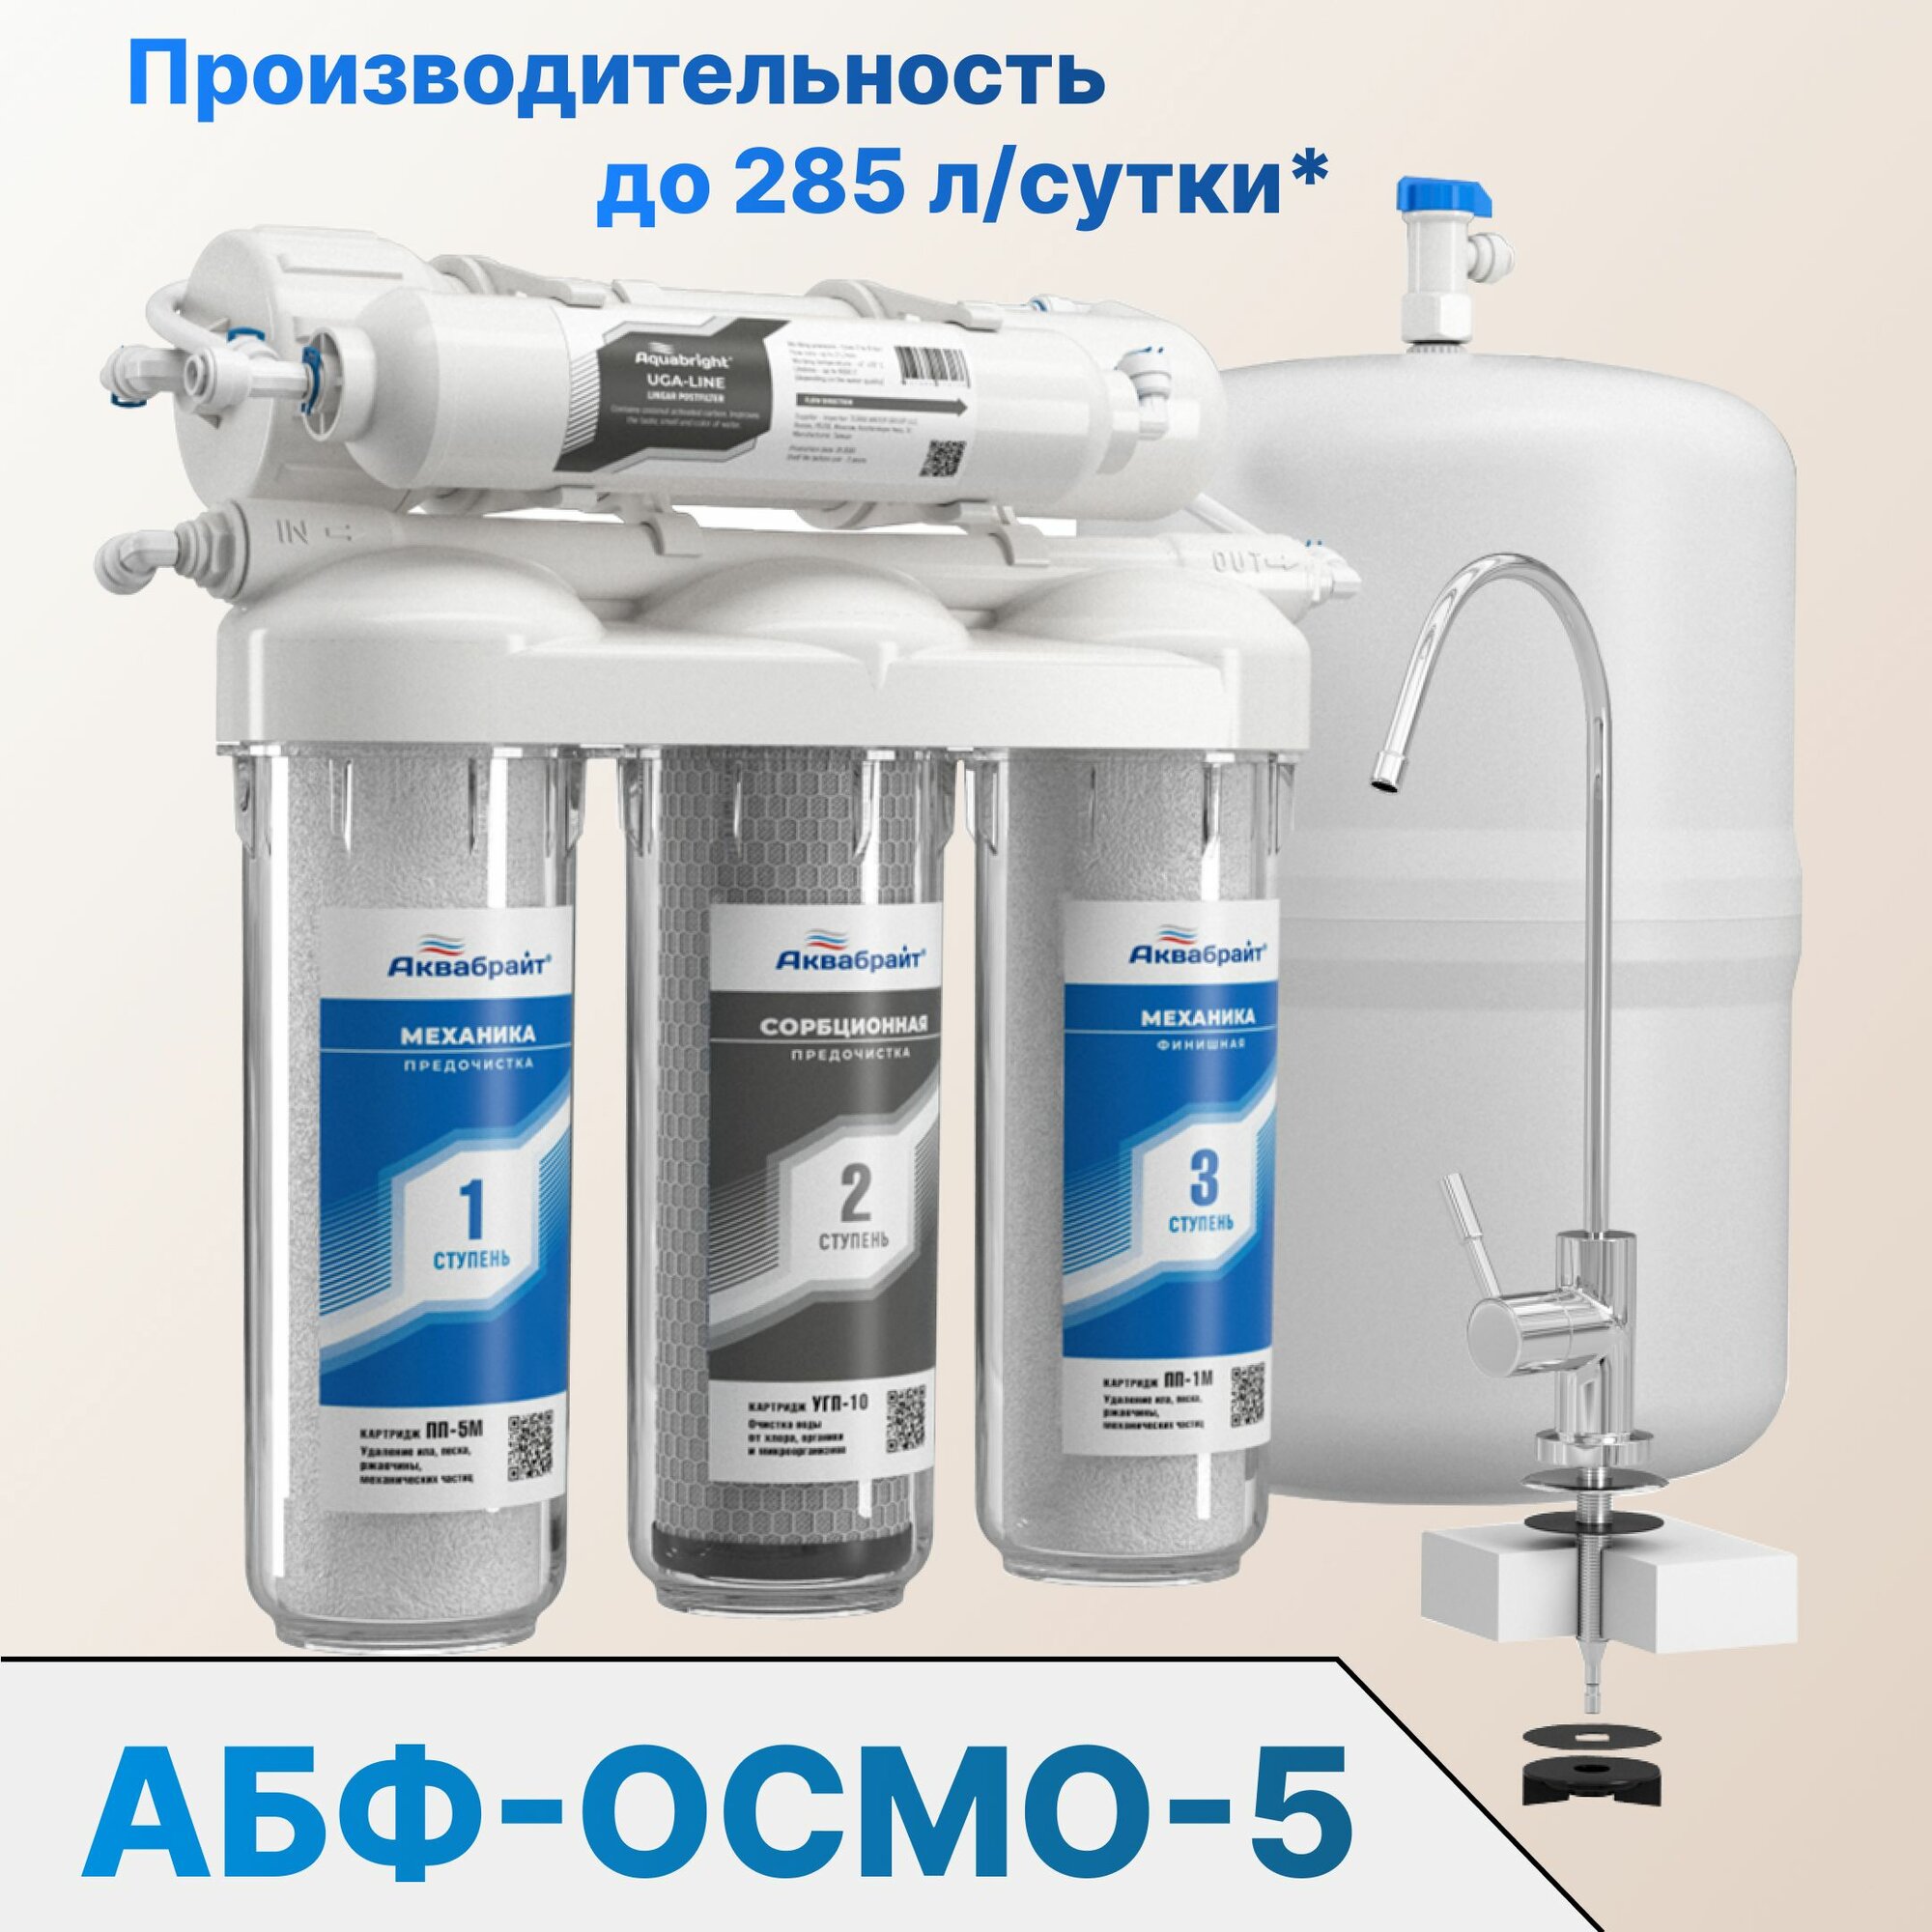 Cистема очистки питьевой воды с обратным осмосом АБФ-ОСМО-5